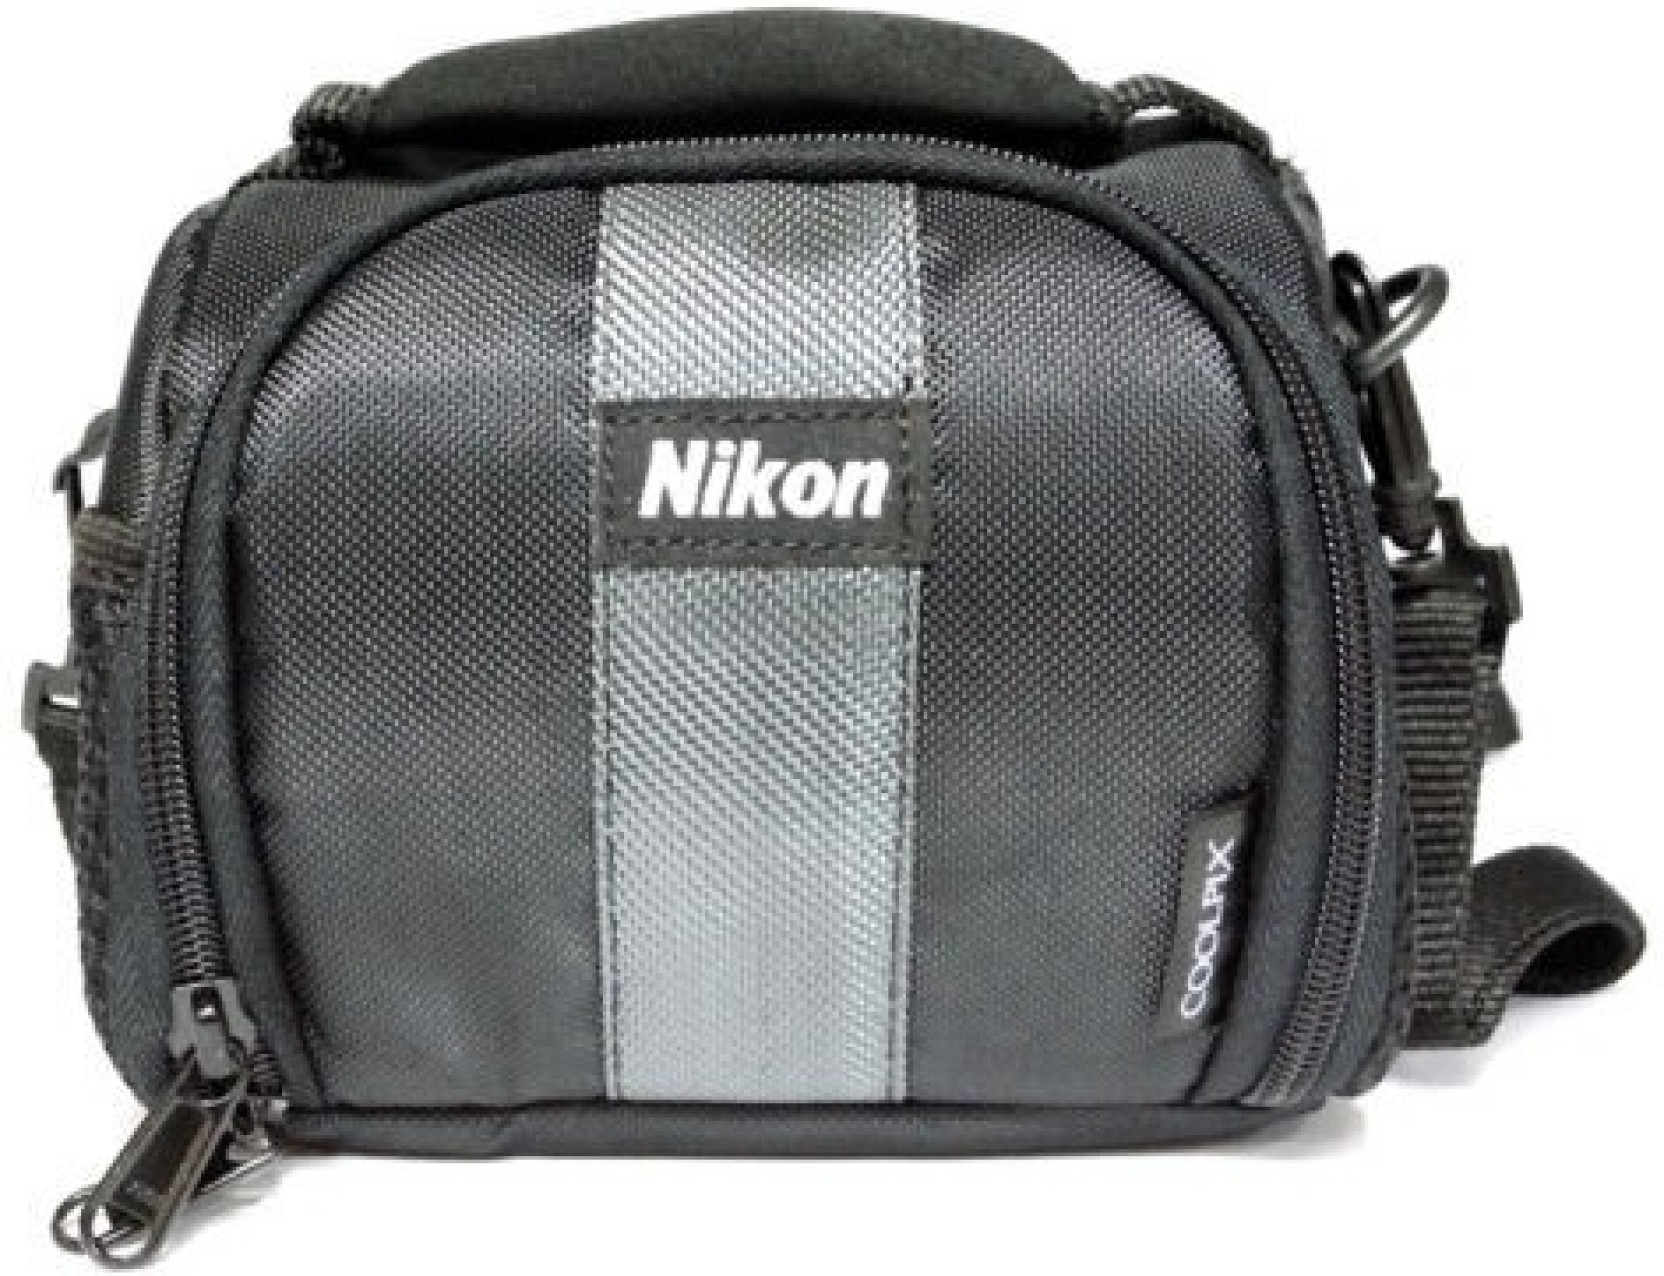 Nikon Camera Case For Coolpix 5400